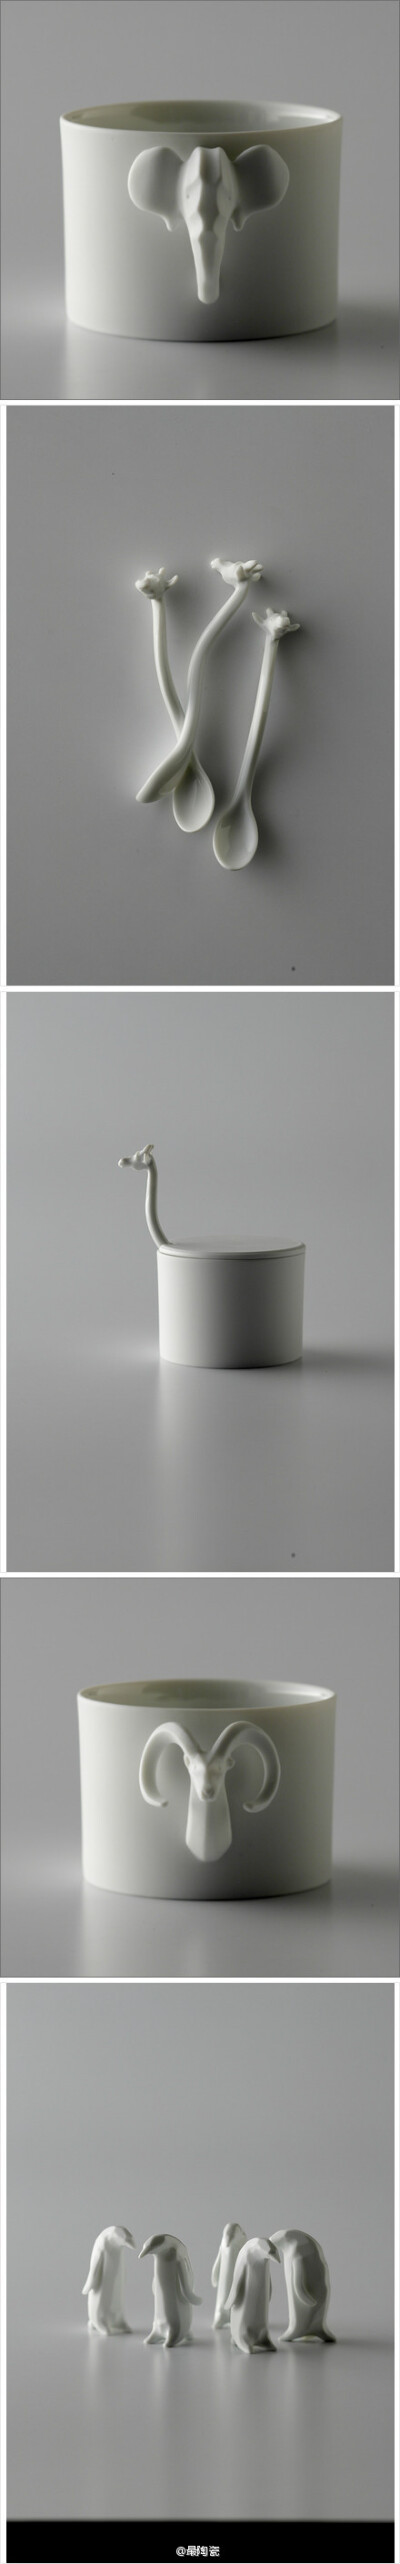 EZA animal 系列 来自自日本设计品牌PROOF OF GUILD的一系列陶瓷桌上品